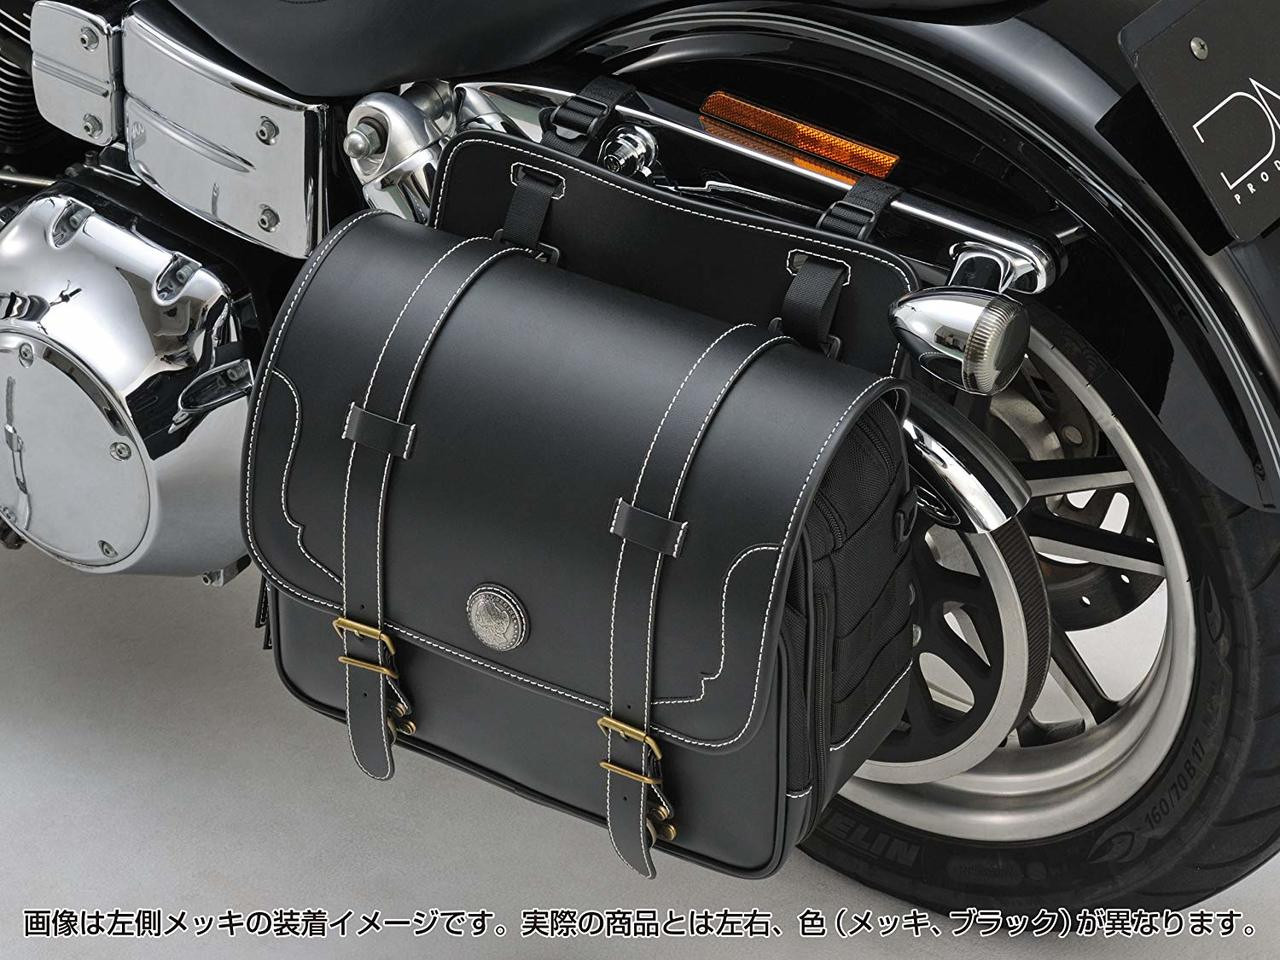 Saddle Bag Support Holder, Right, Black, Harley Davidson Dyna 06-15 * FXDWG/I